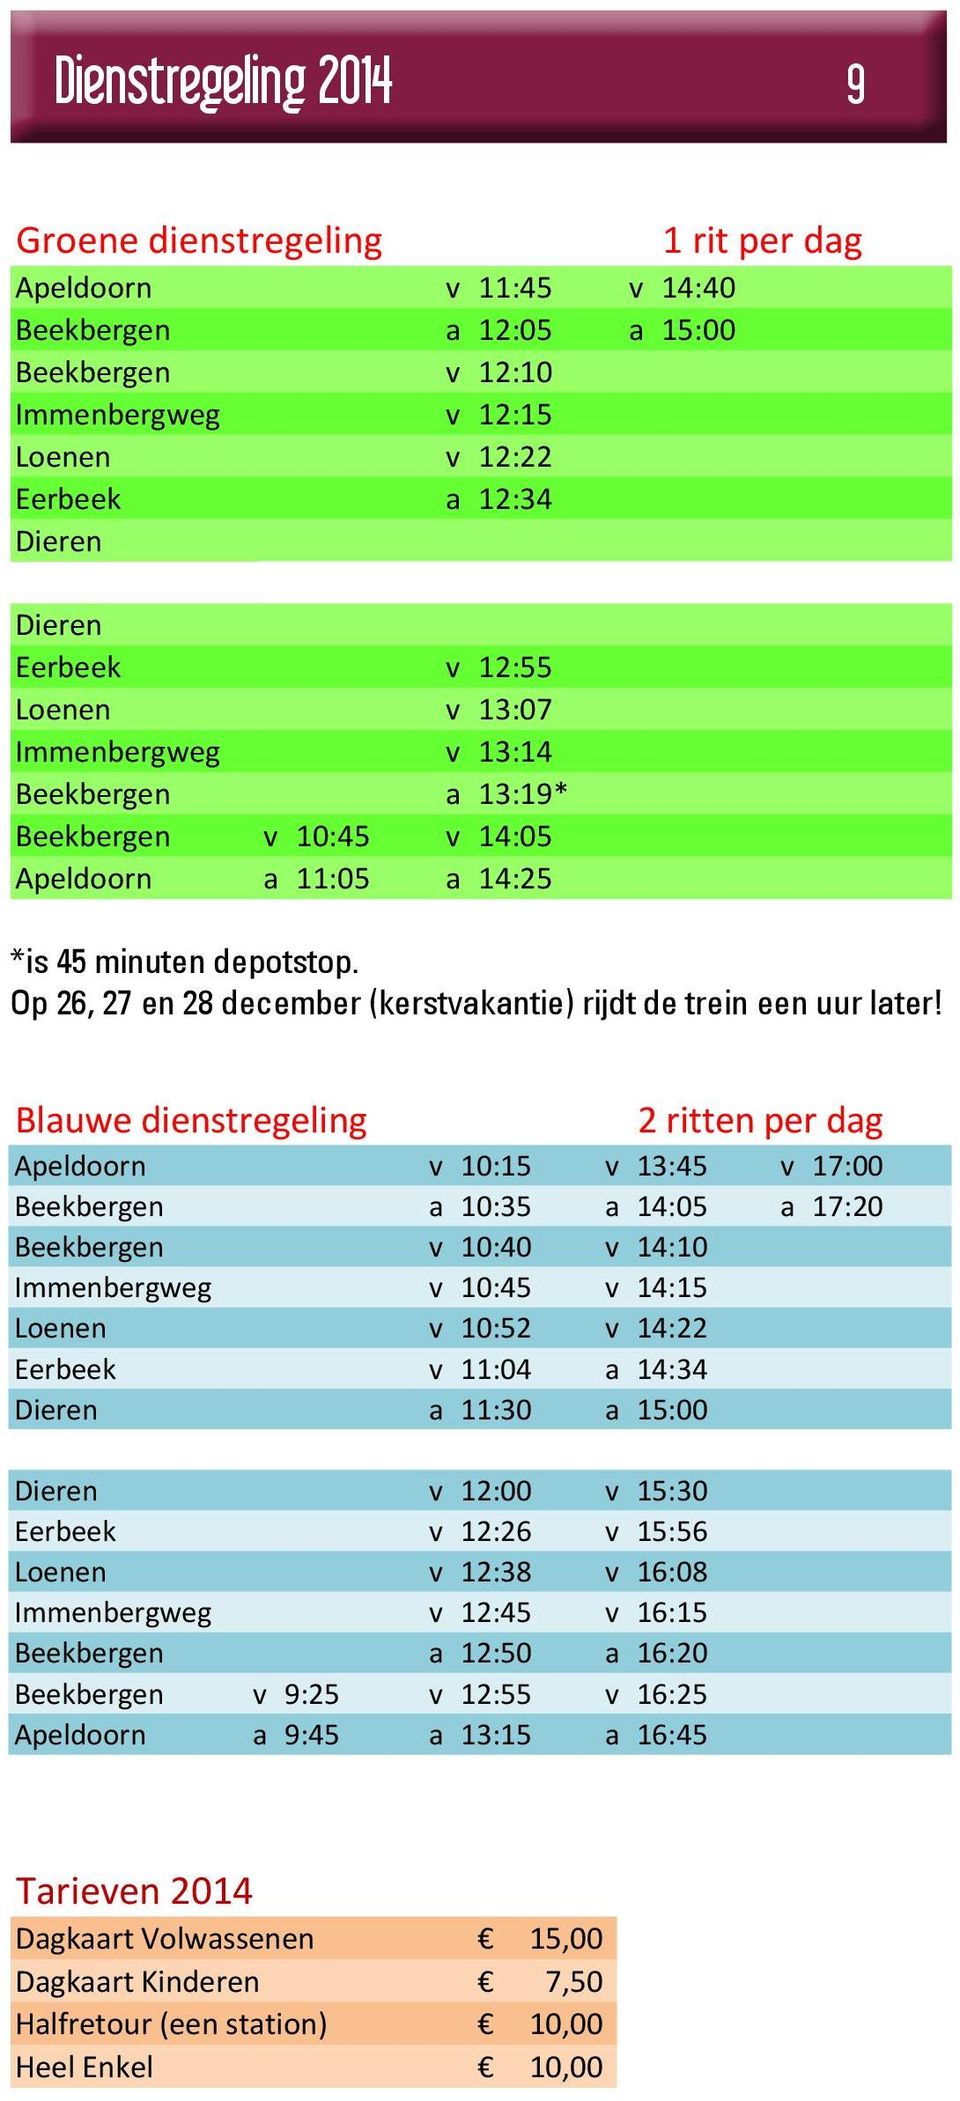 * depotstop = 45 minuten depotstop Op Met 26, kerst 27 en (26, 2827,en december 28 dec.)alles (kerstvakantie) een uur later rijdt de trein een uur later!